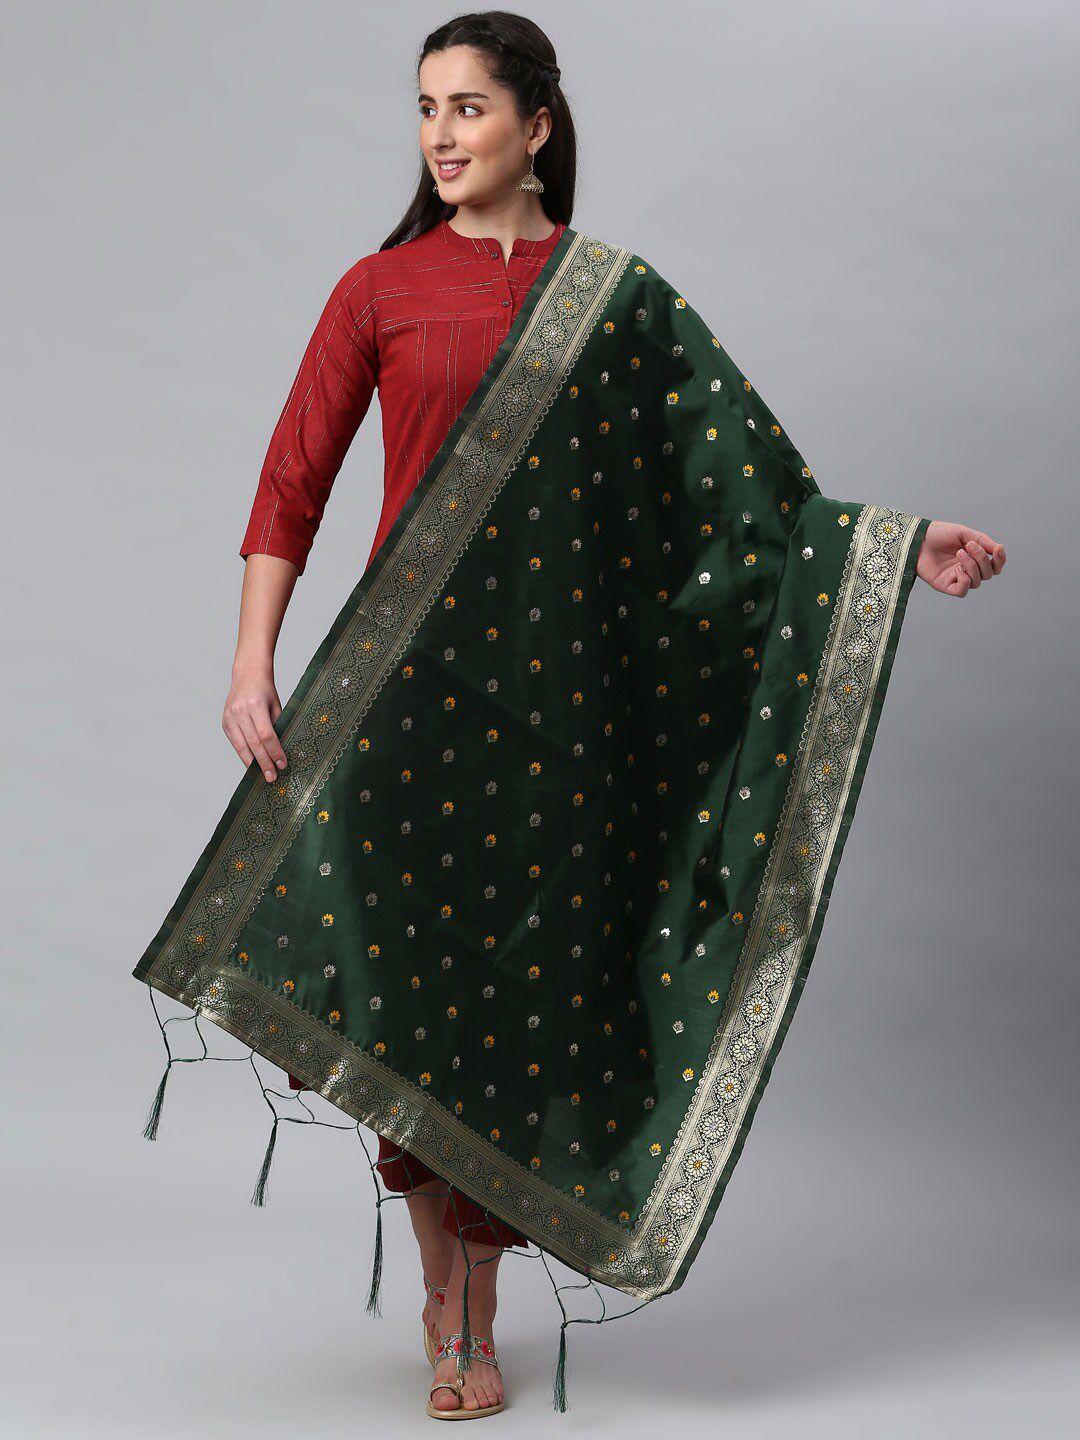 lilots green & golden ethnic motifs woven design dupatta